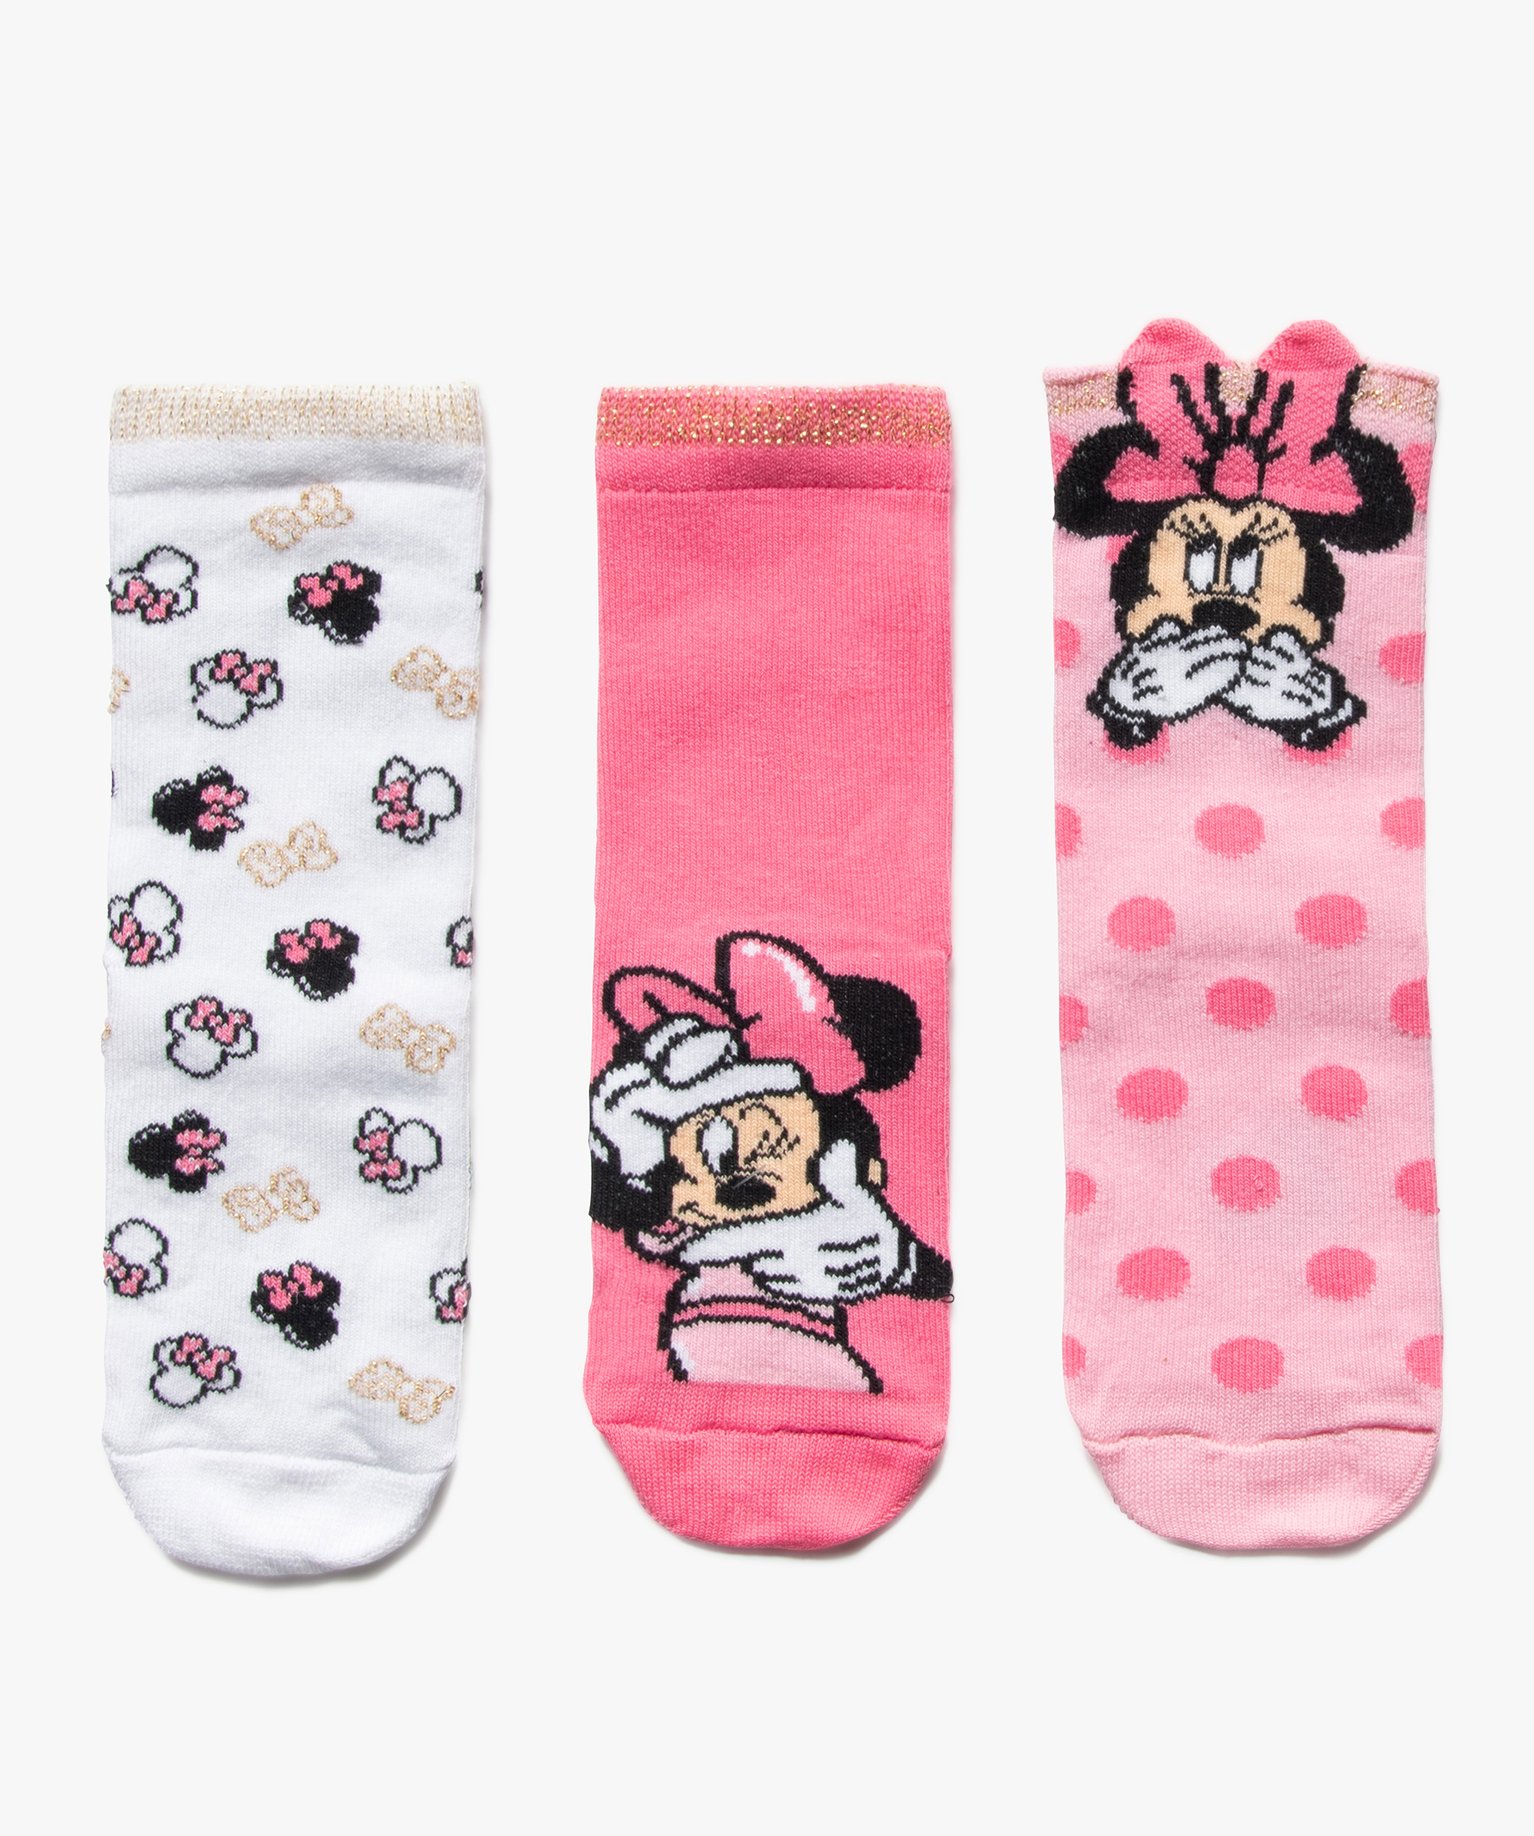 Chaussettes enfant tige haute imprimées Minnie - Disney (lot de 3)